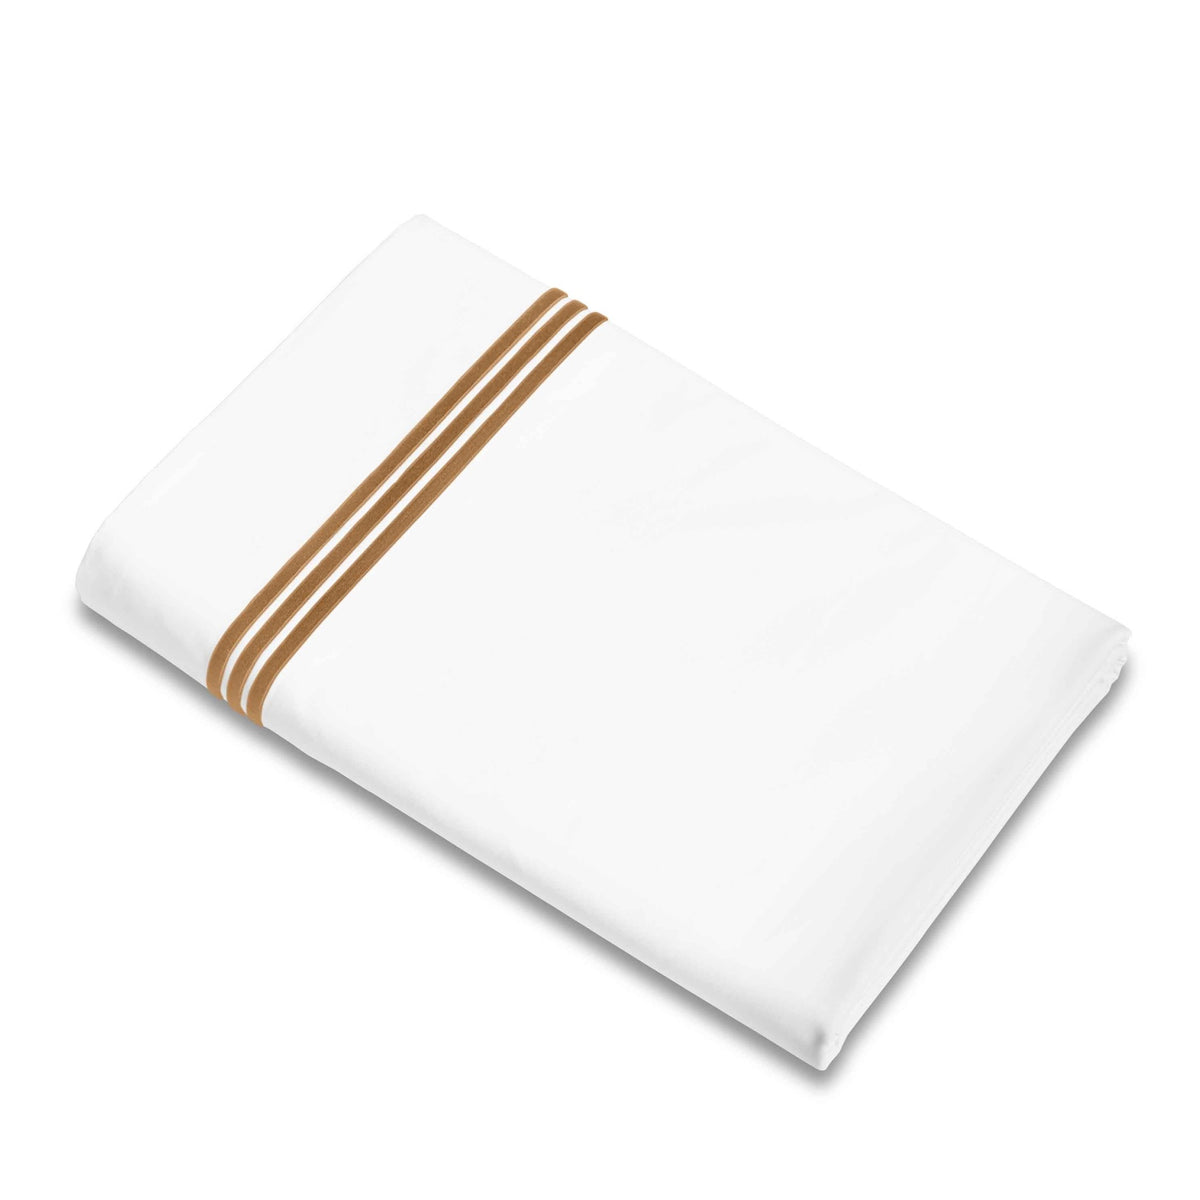 Flat Sheet of Signoria Platinum Percale Bedding in White/Cognac Color